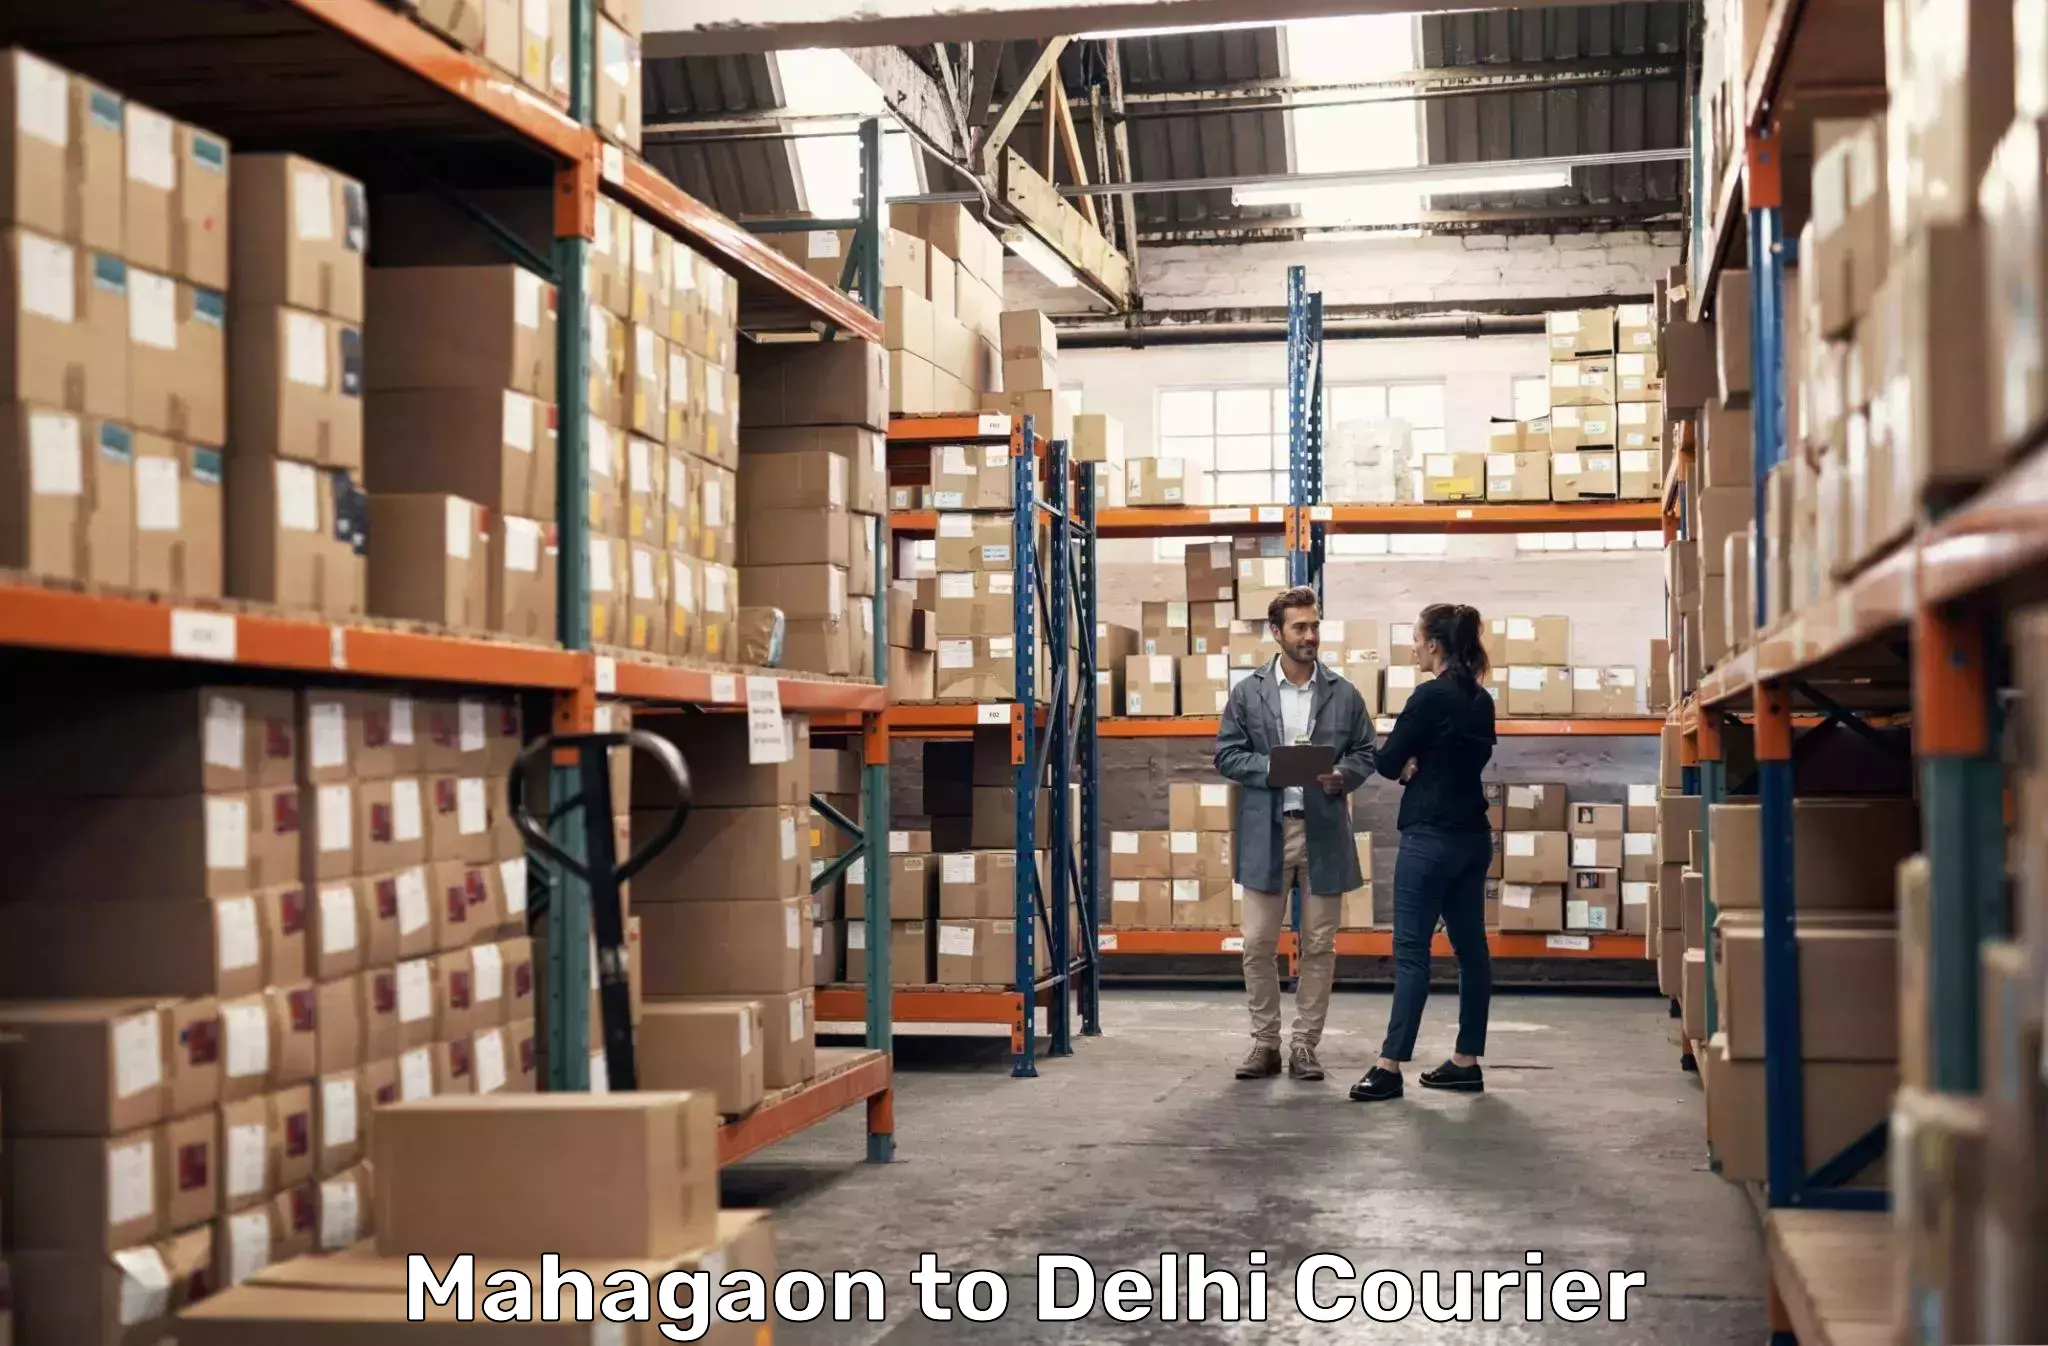 24/7 courier service Mahagaon to Ashok Vihar